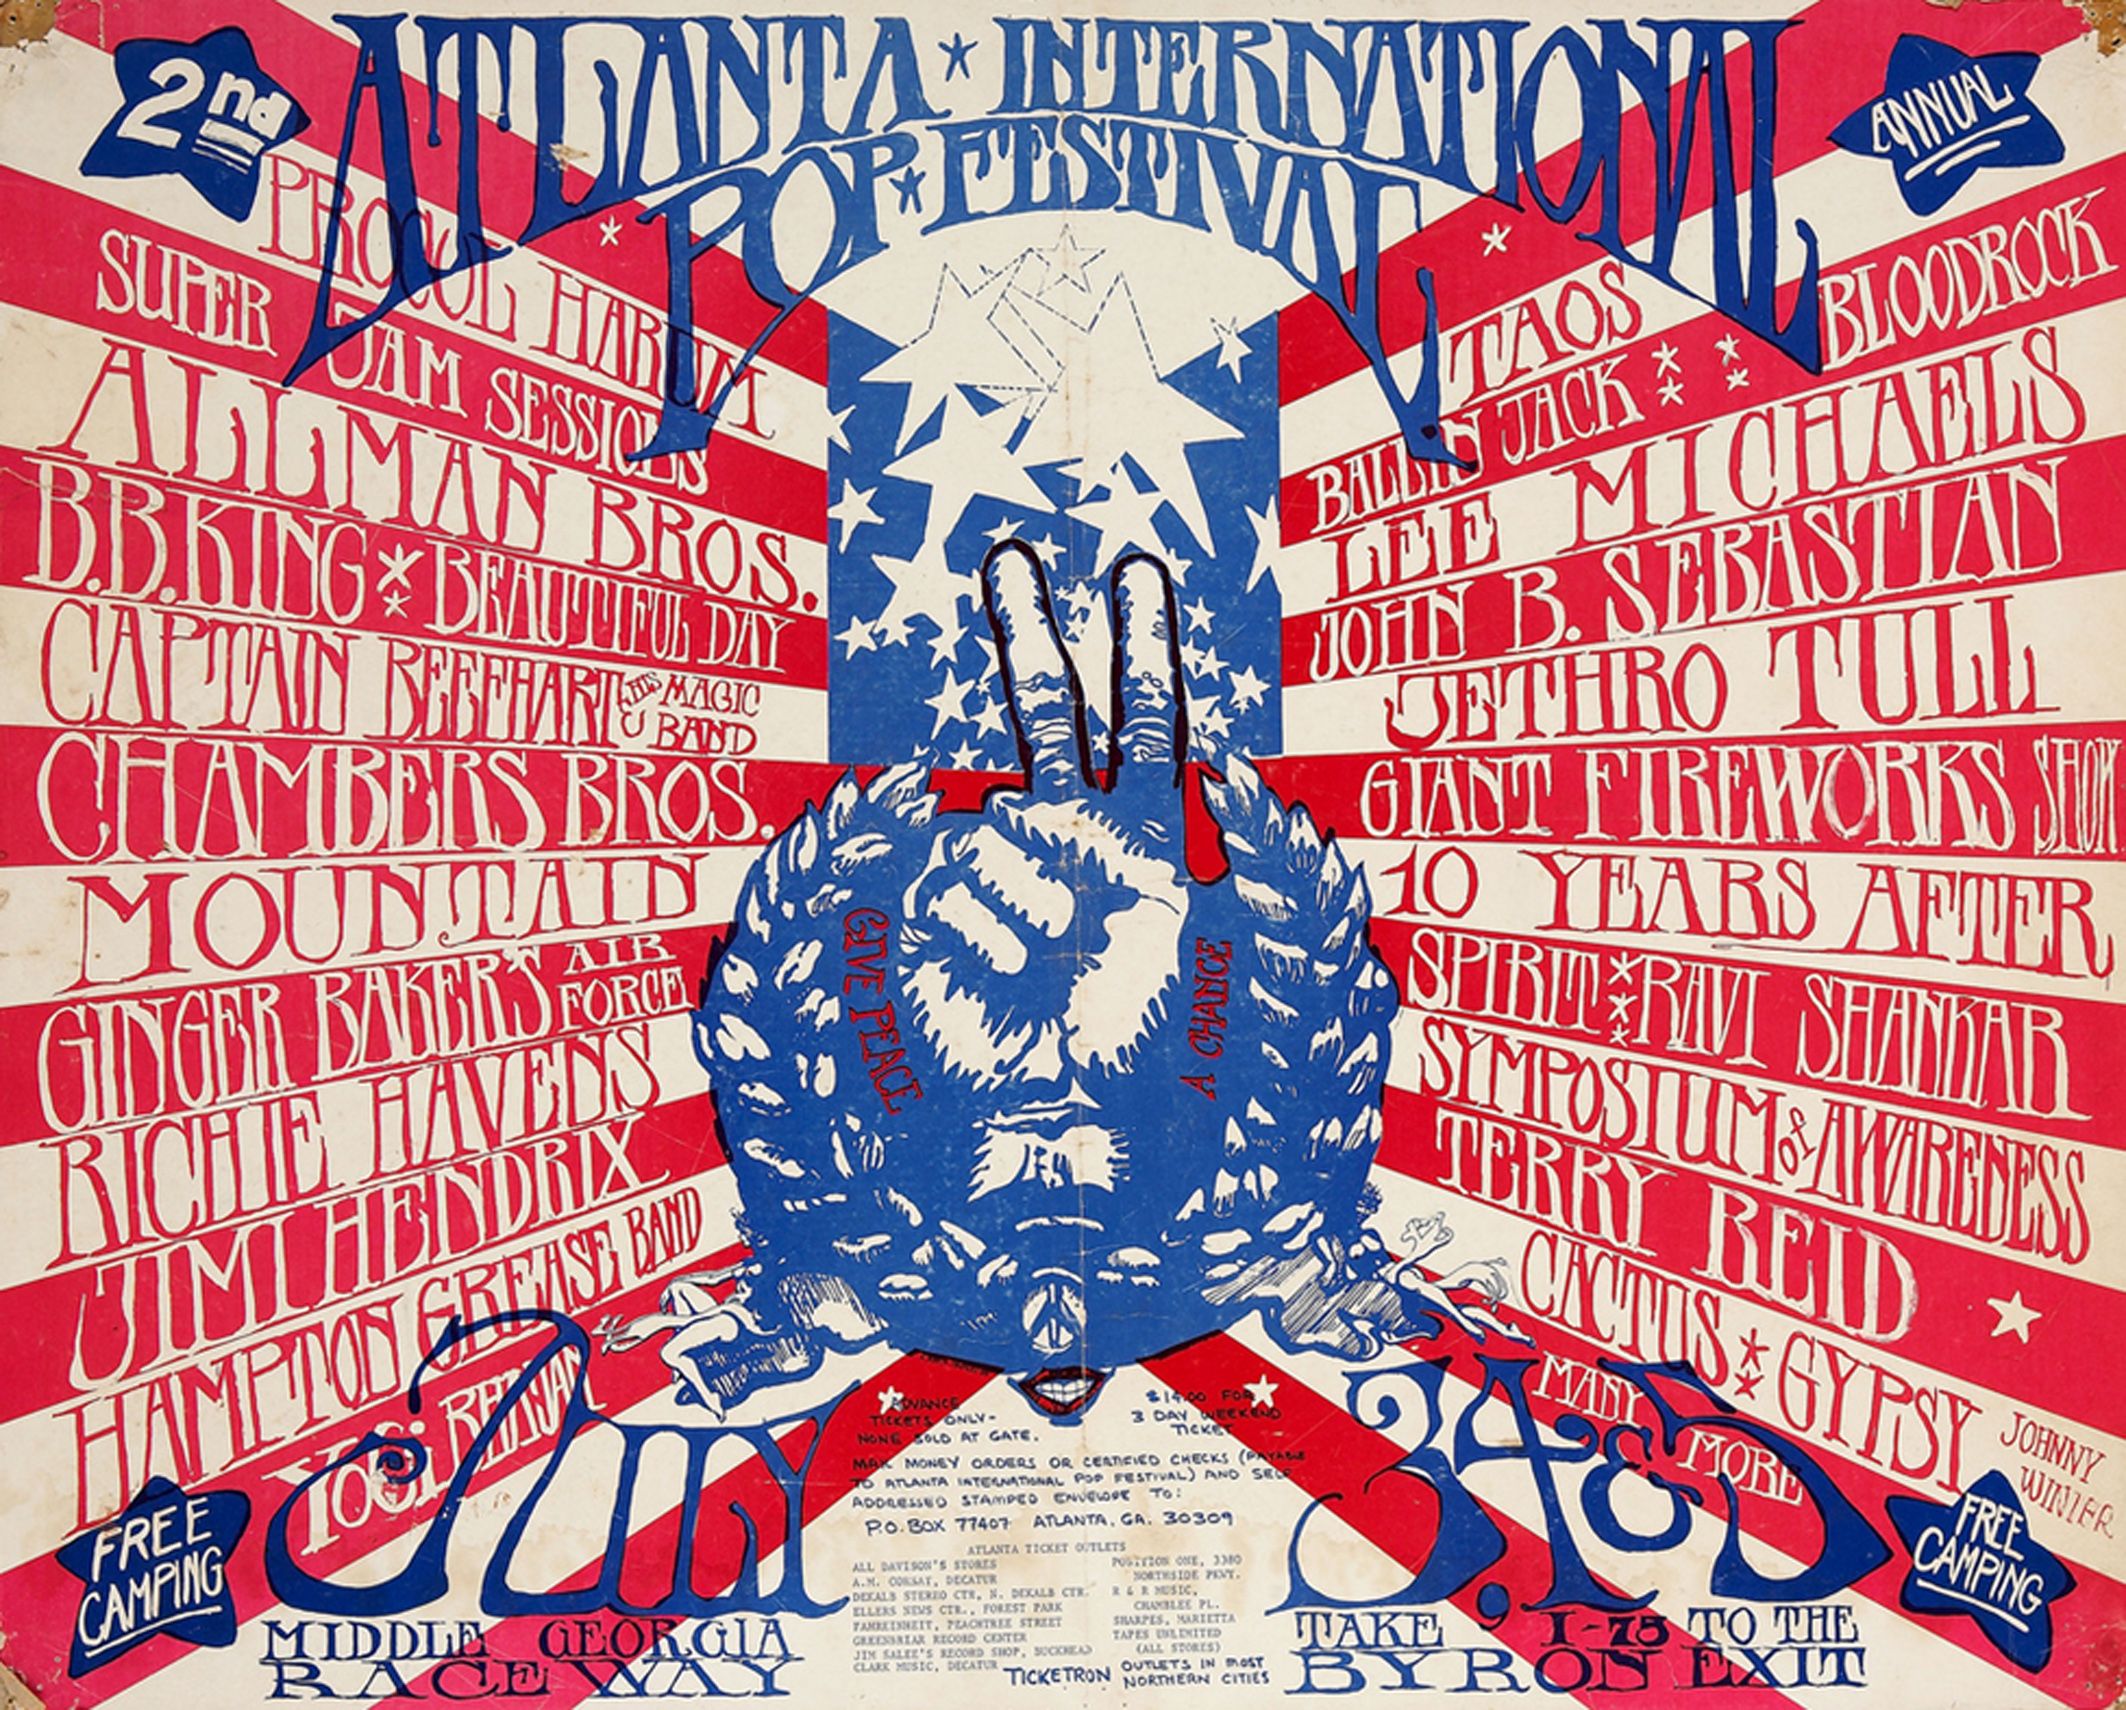 Atlanta International Pop Festival (1970)